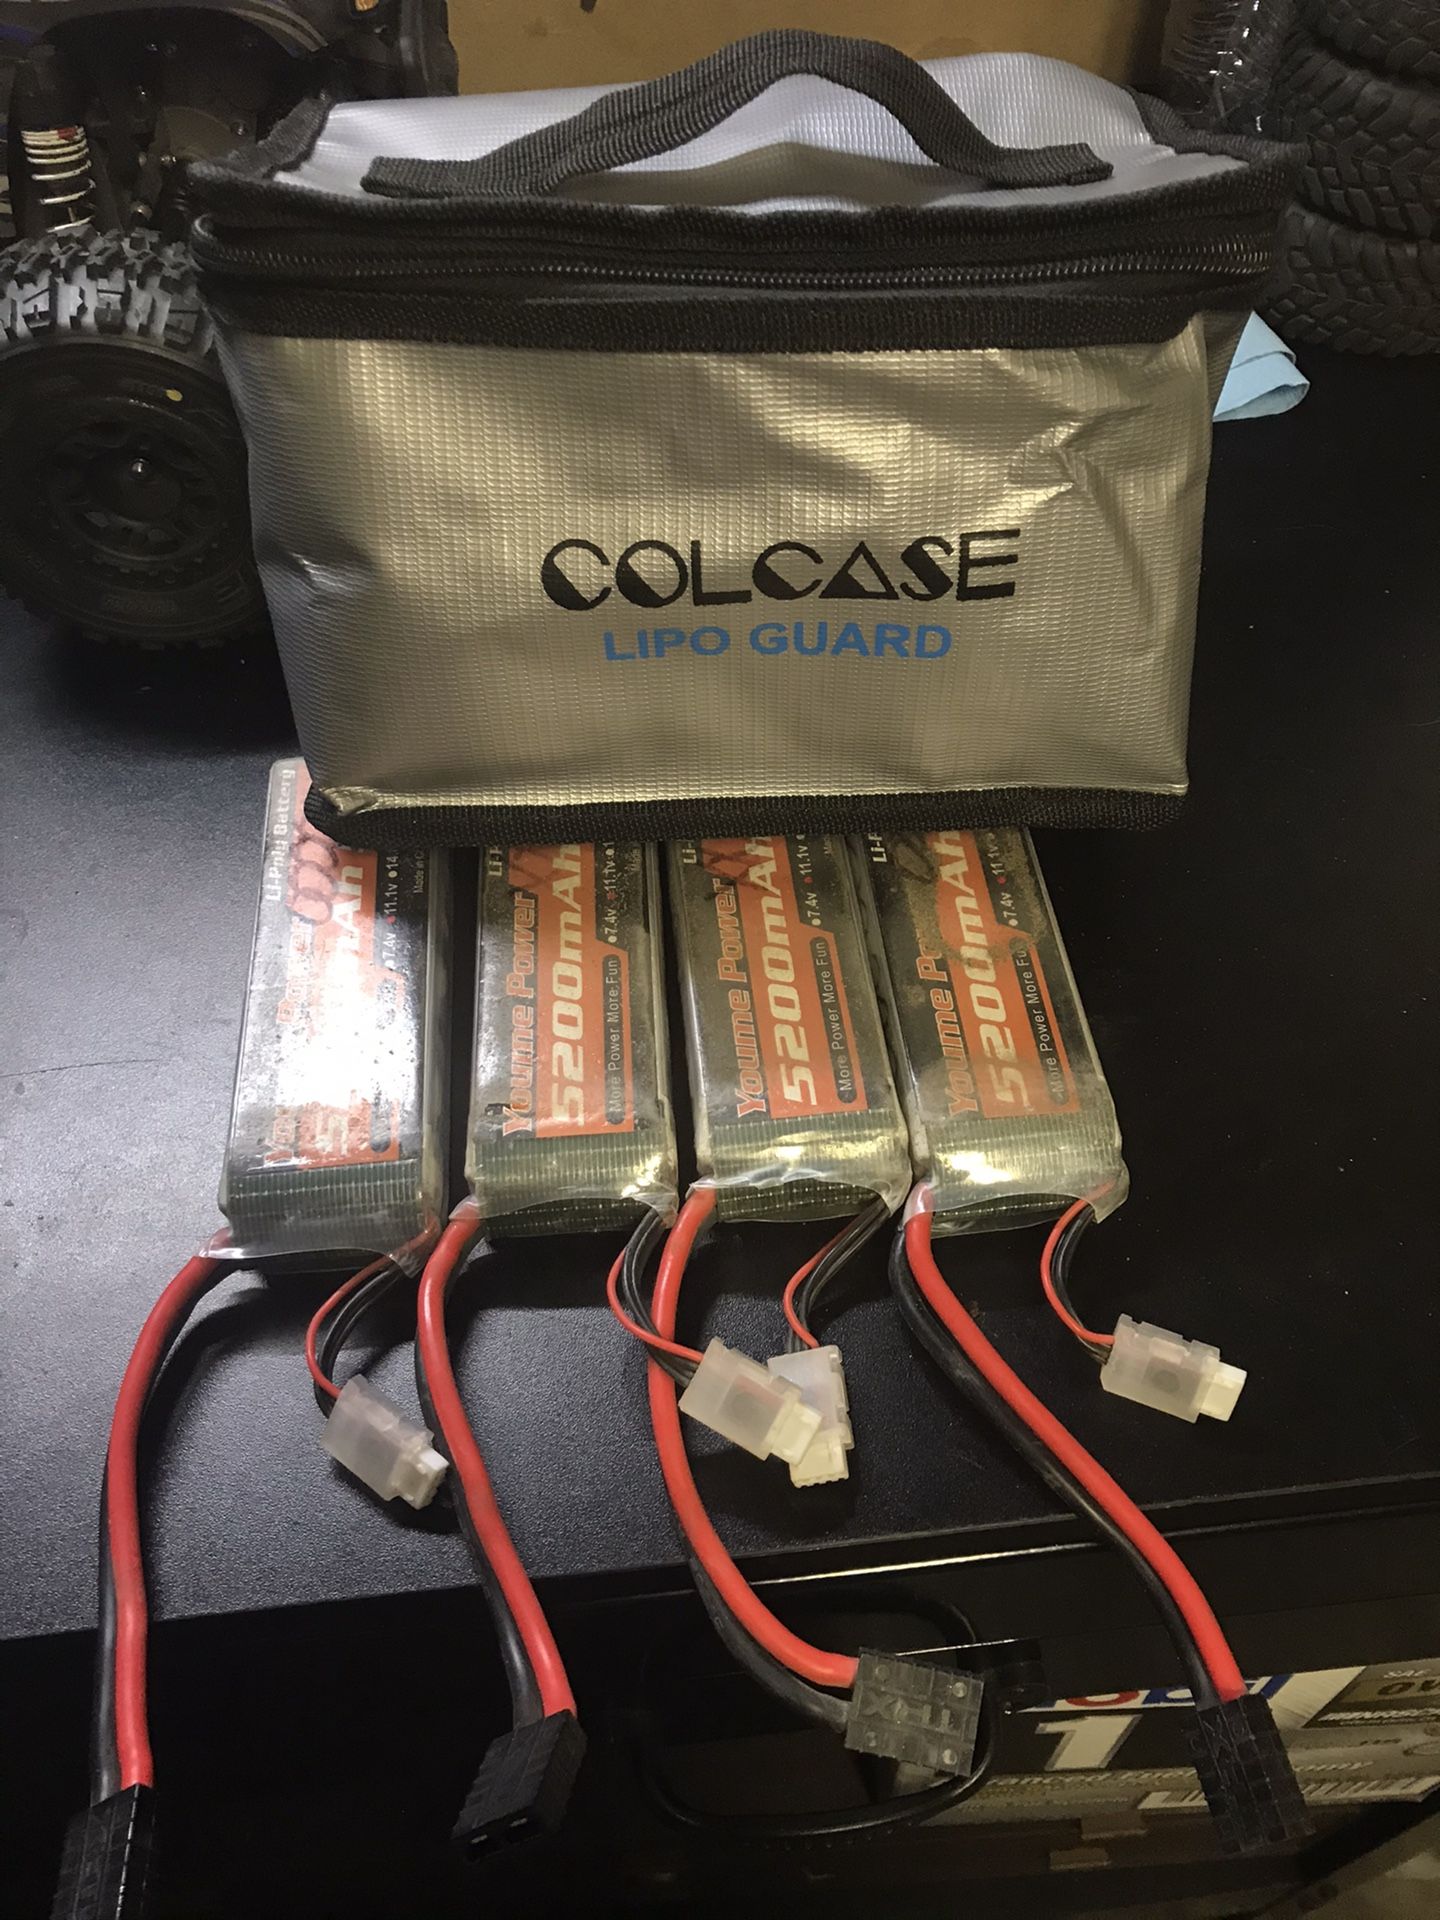 3s lipo batteries x4 and bag